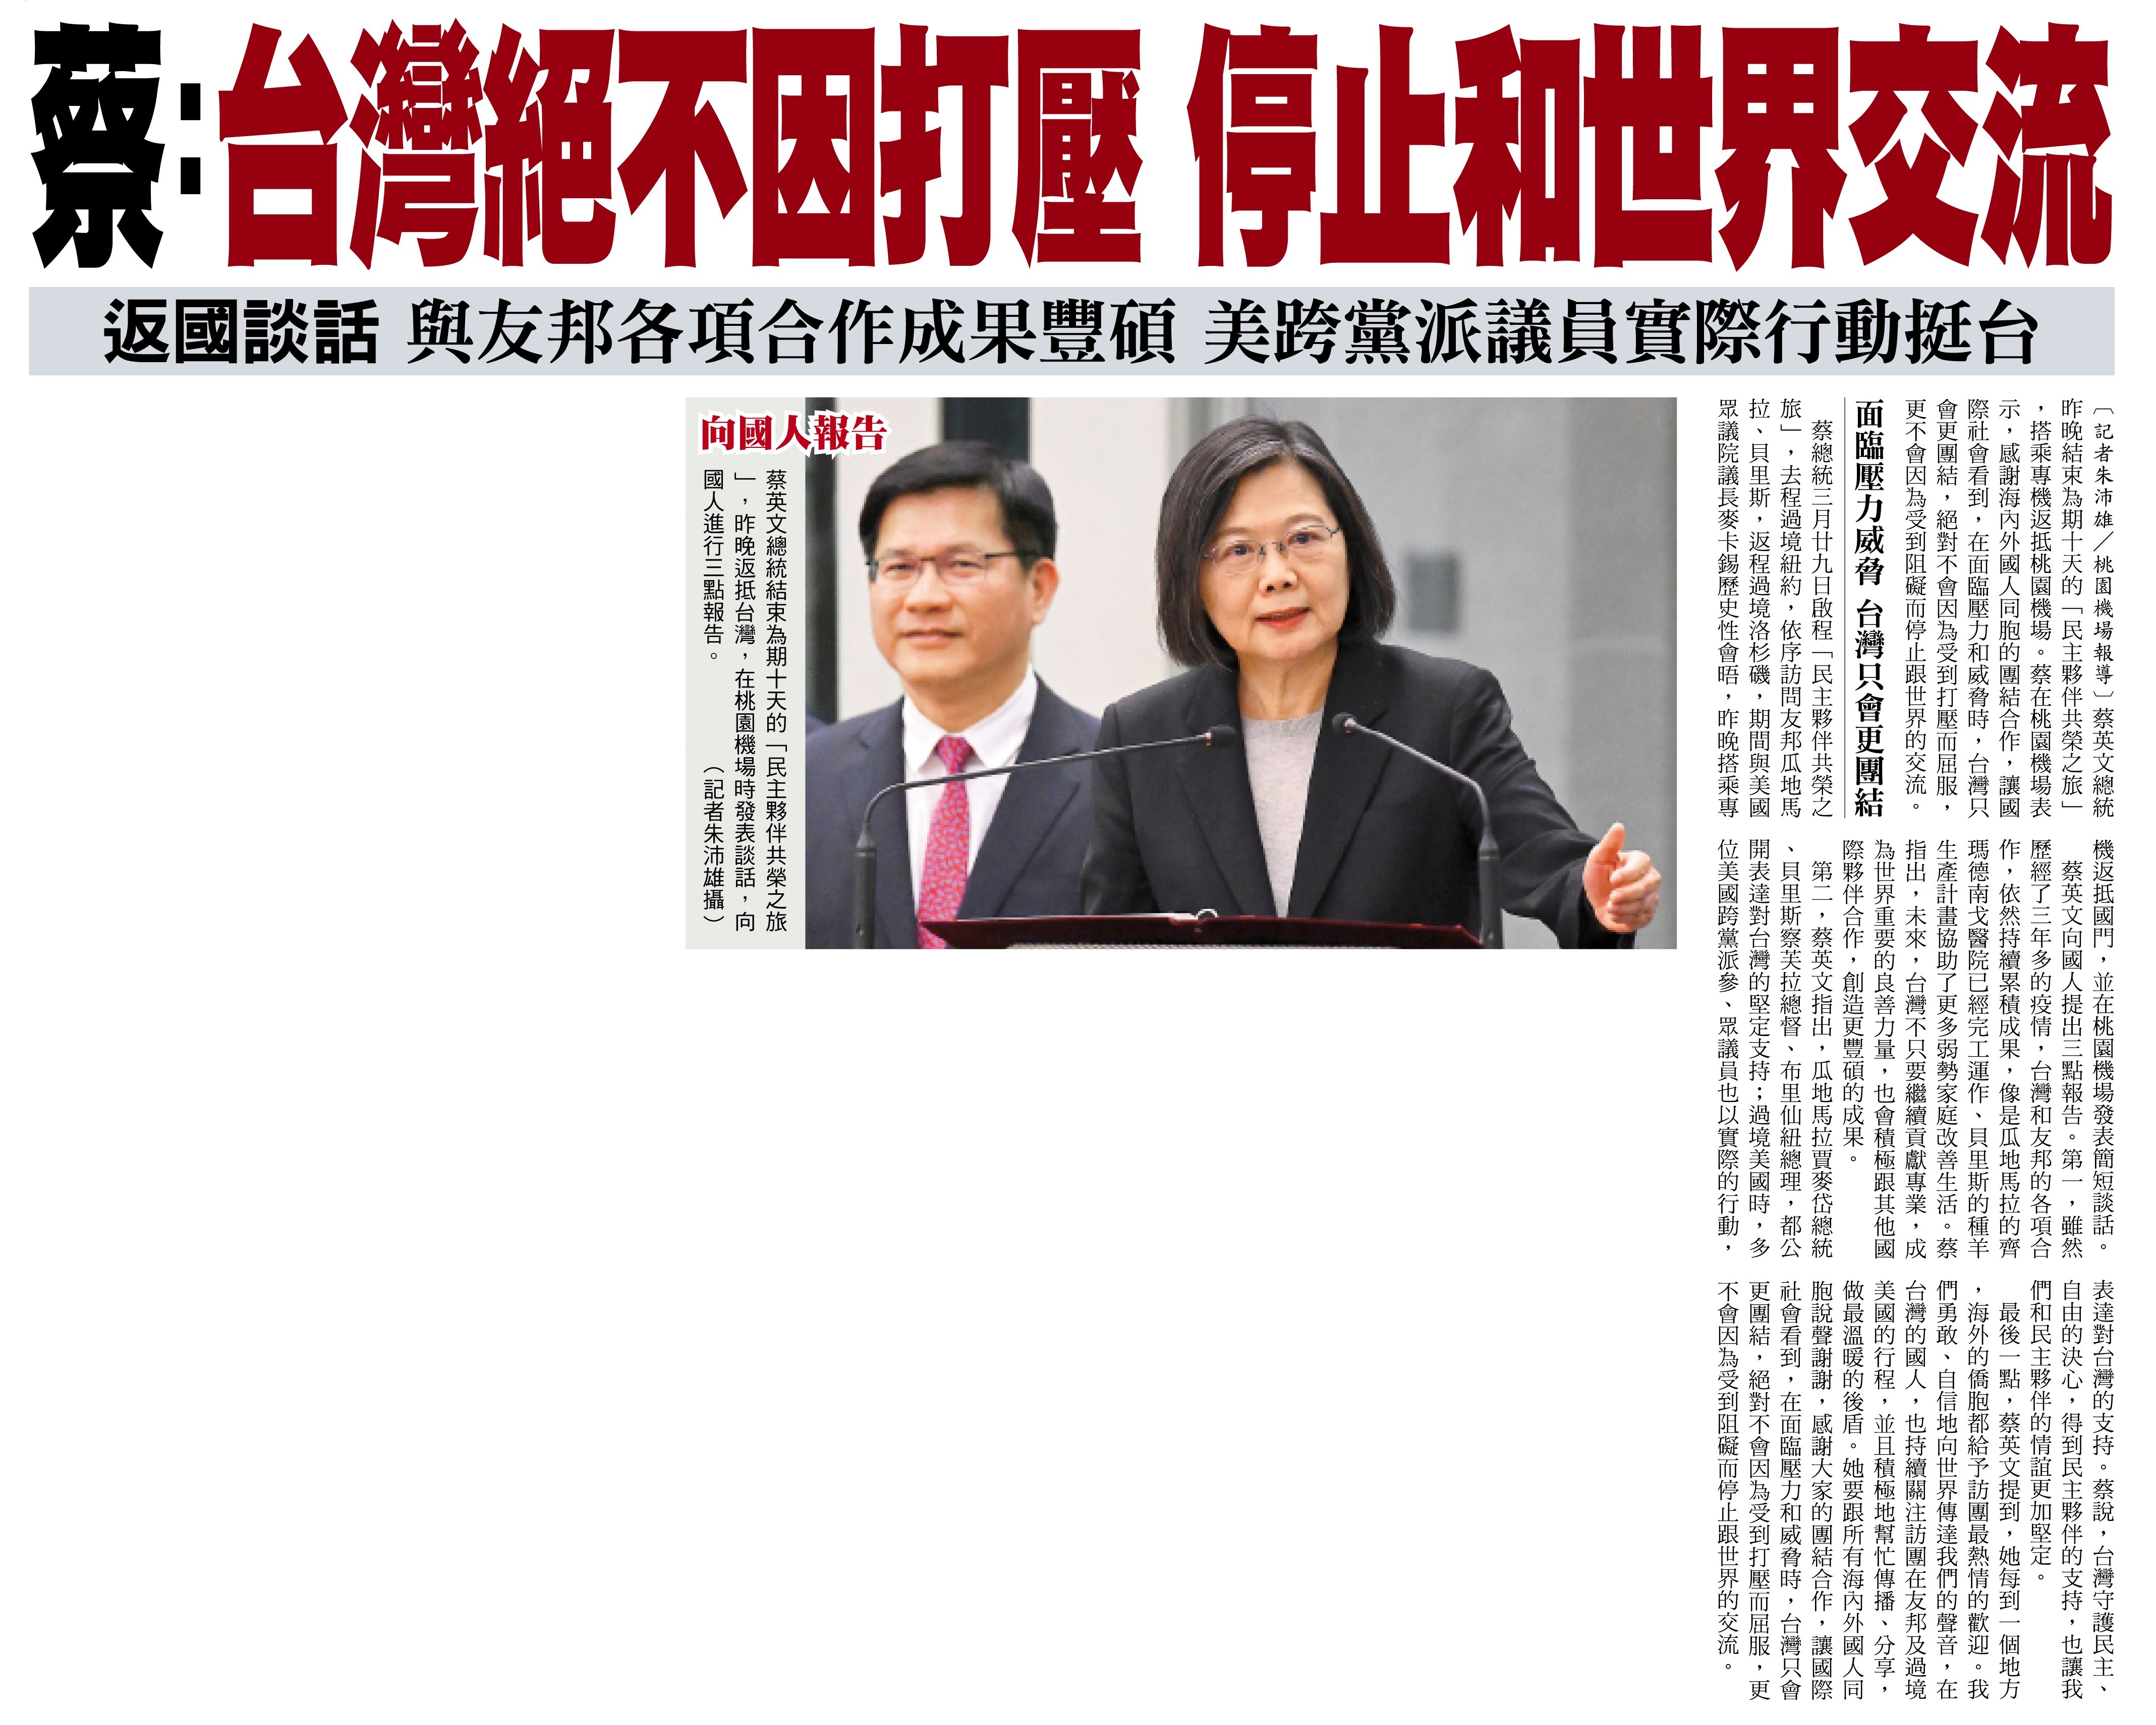 Tras retorno a Taiwán, Tsai señala que Taiwán no sucumbirá ante la presión ni dejará de relacionarse con el mundo. La cooperación con los aliados ha dado resultados, y los congresistas bipartidistas de EE. UU. apoyan a Taiwán mediante acciones concretas